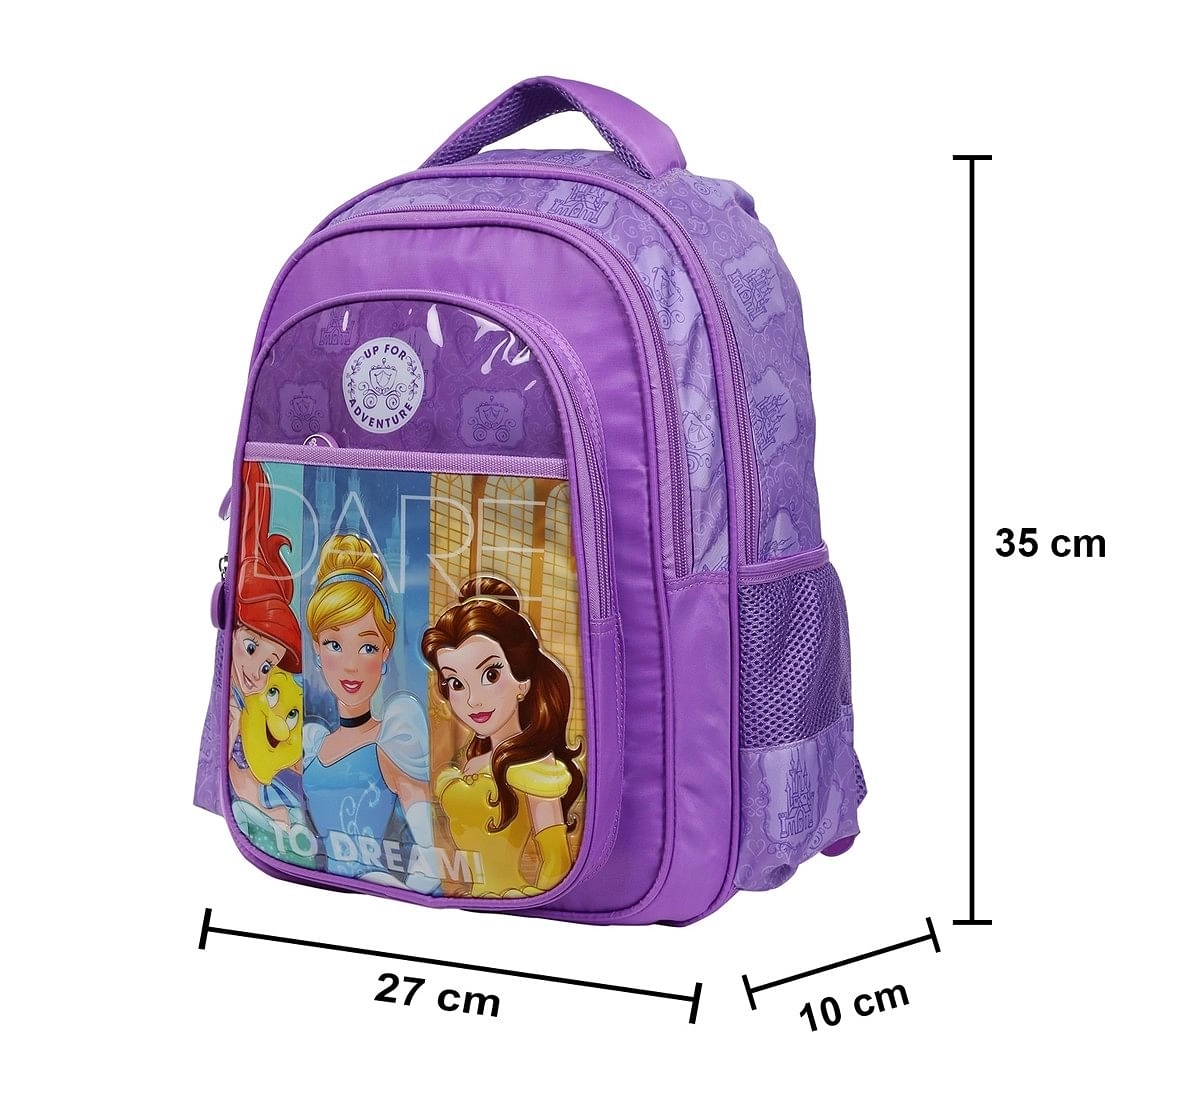 Simba Princess Adventure 14 Backpack Multicolor 3Y+